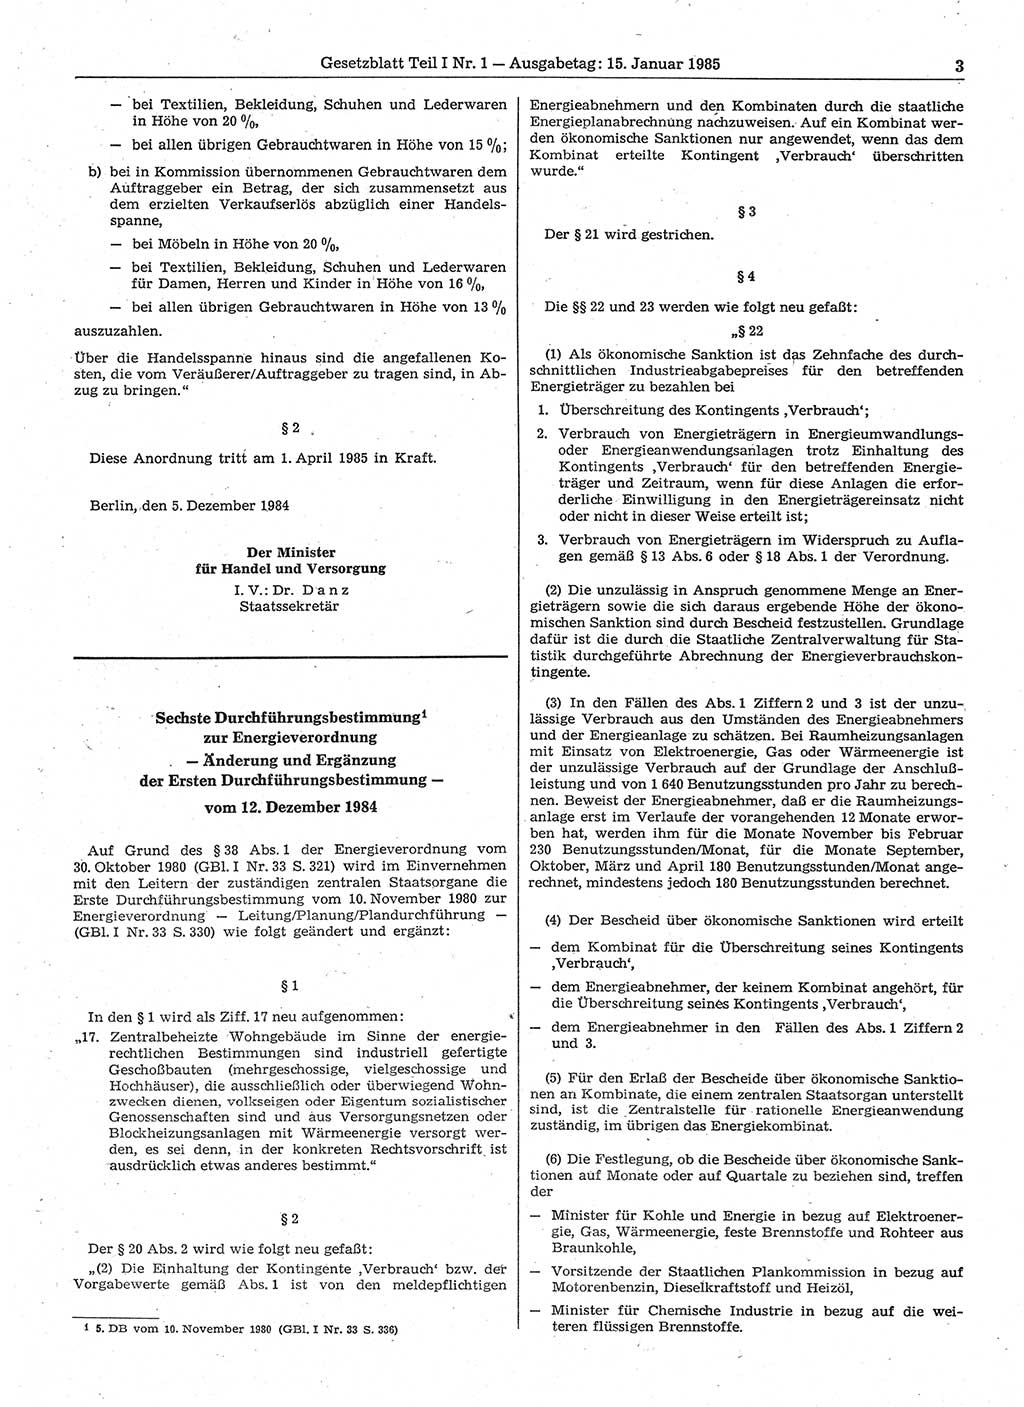 Gesetzblatt (GBl.) der Deutschen Demokratischen Republik (DDR) Teil Ⅰ 1985, Seite 3 (GBl. DDR Ⅰ 1985, S. 3)